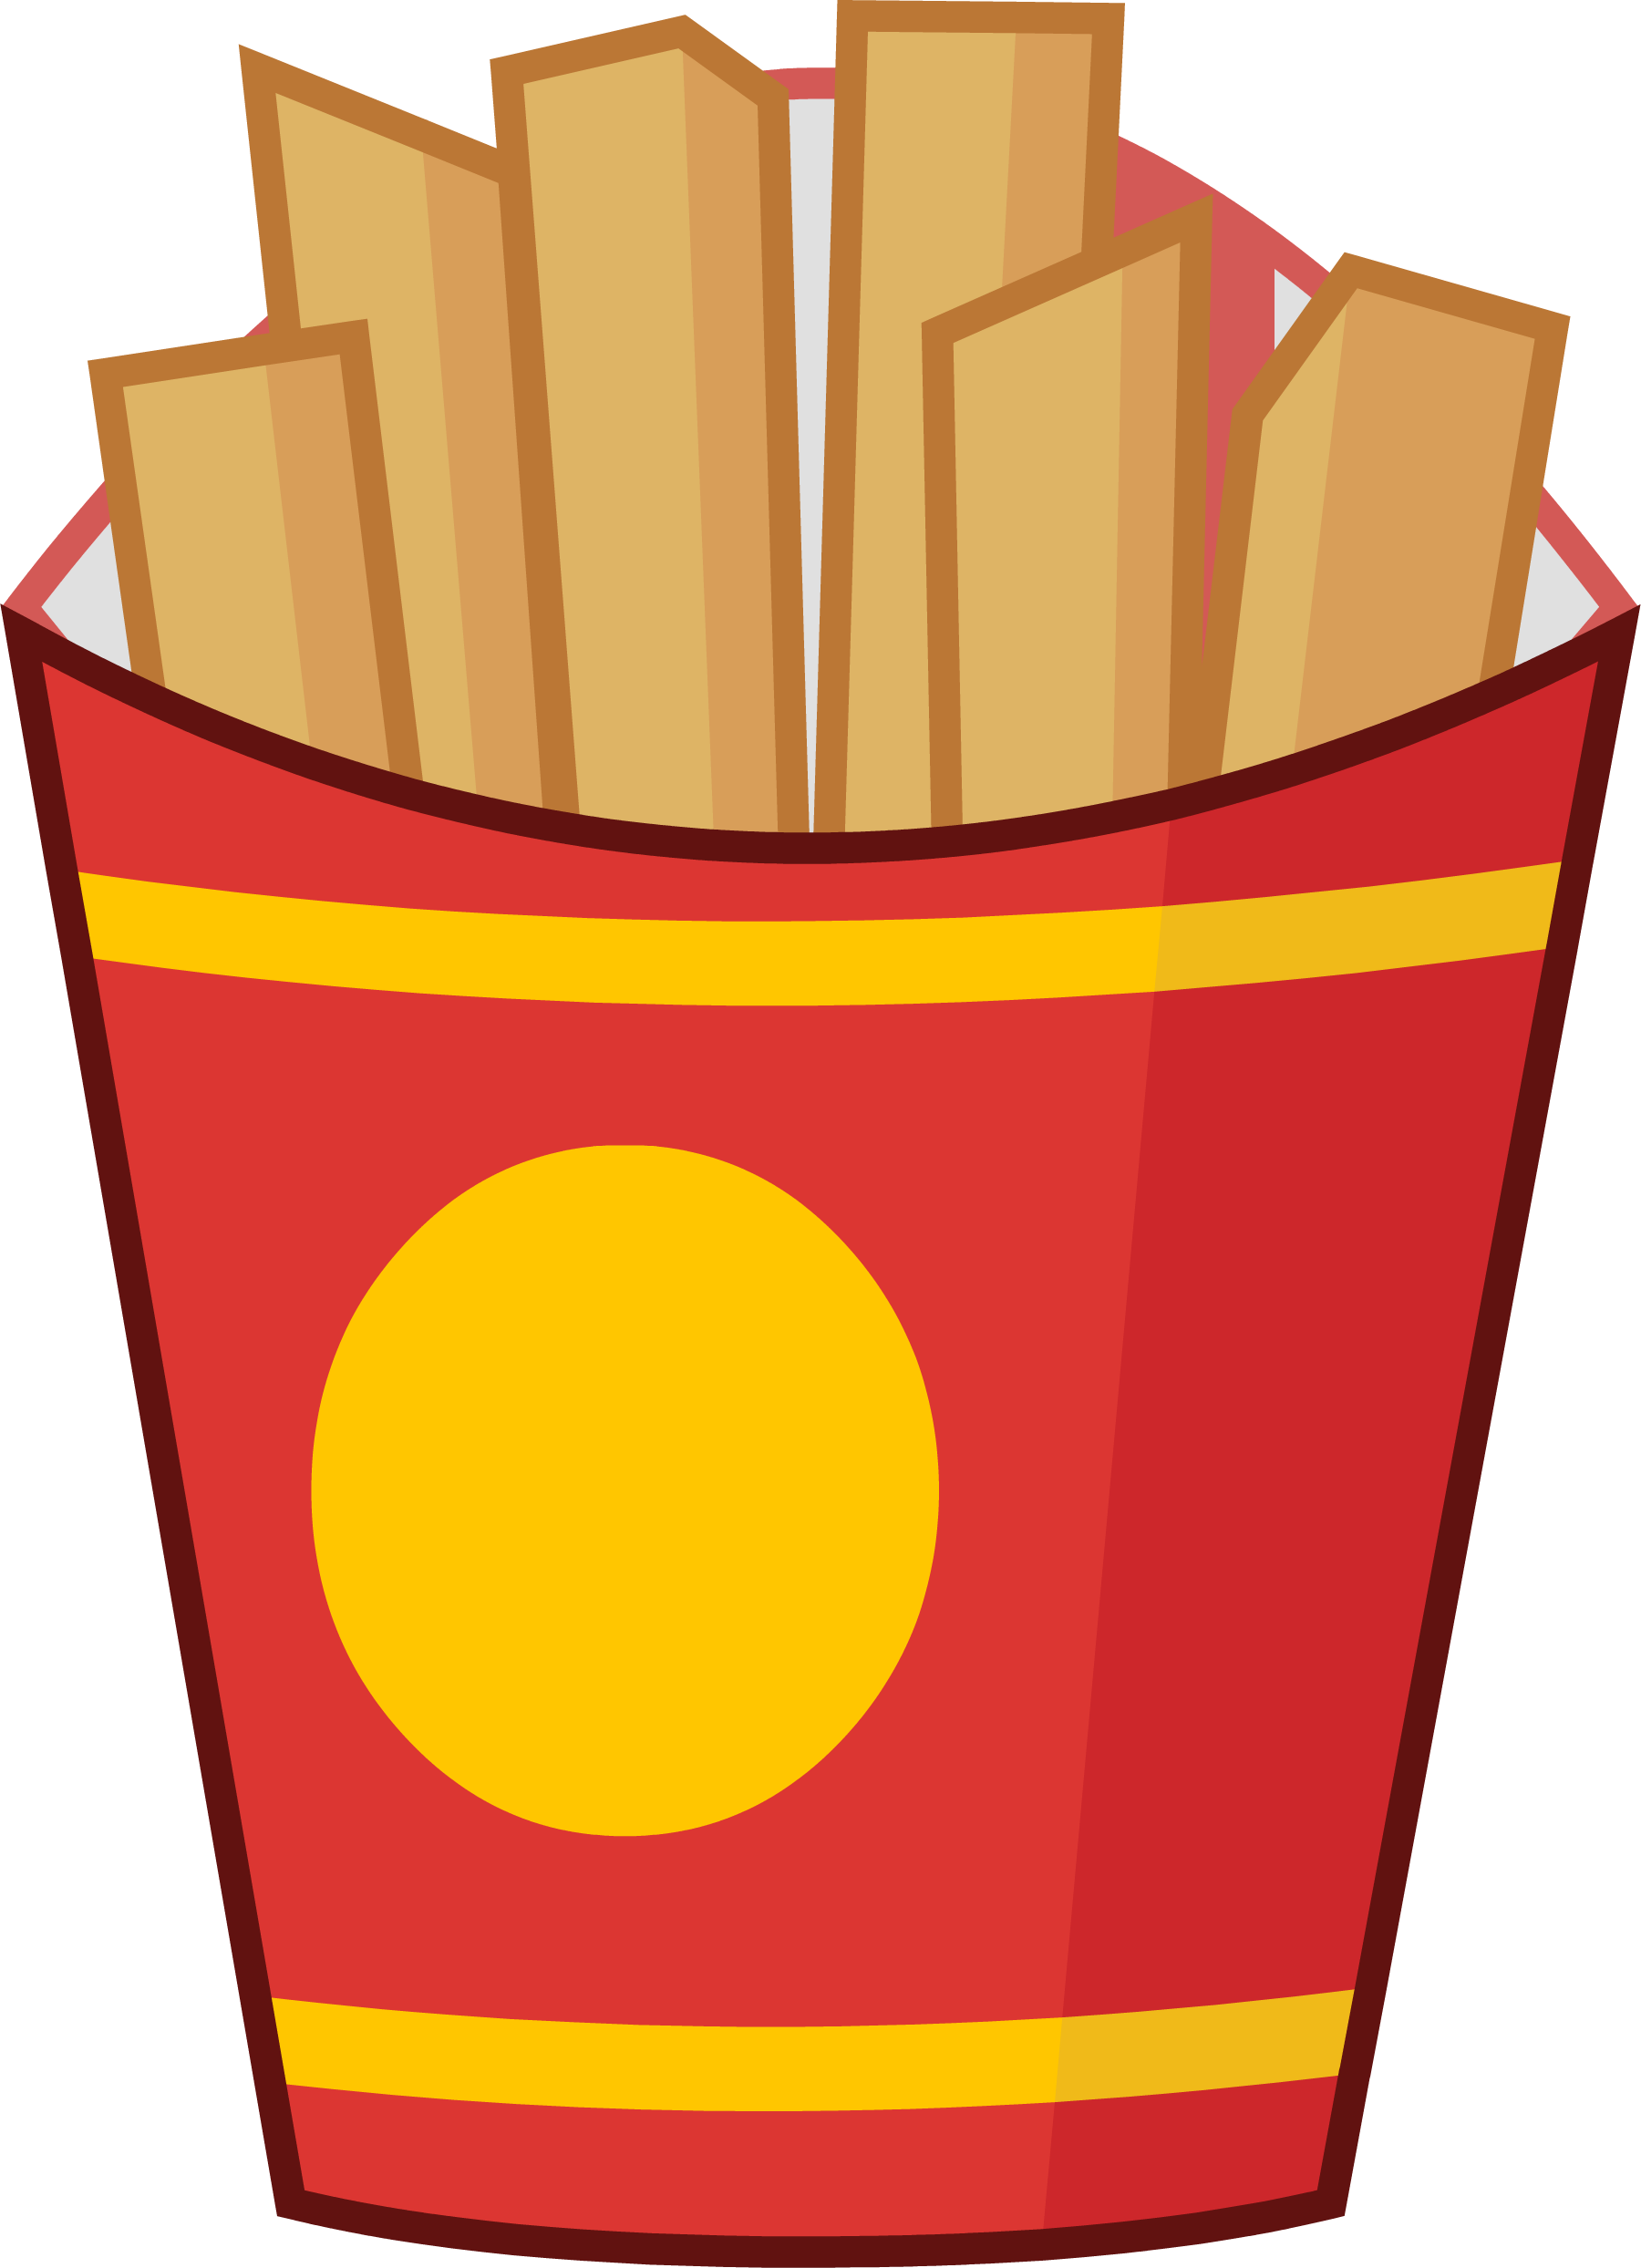 fries clipart doodle